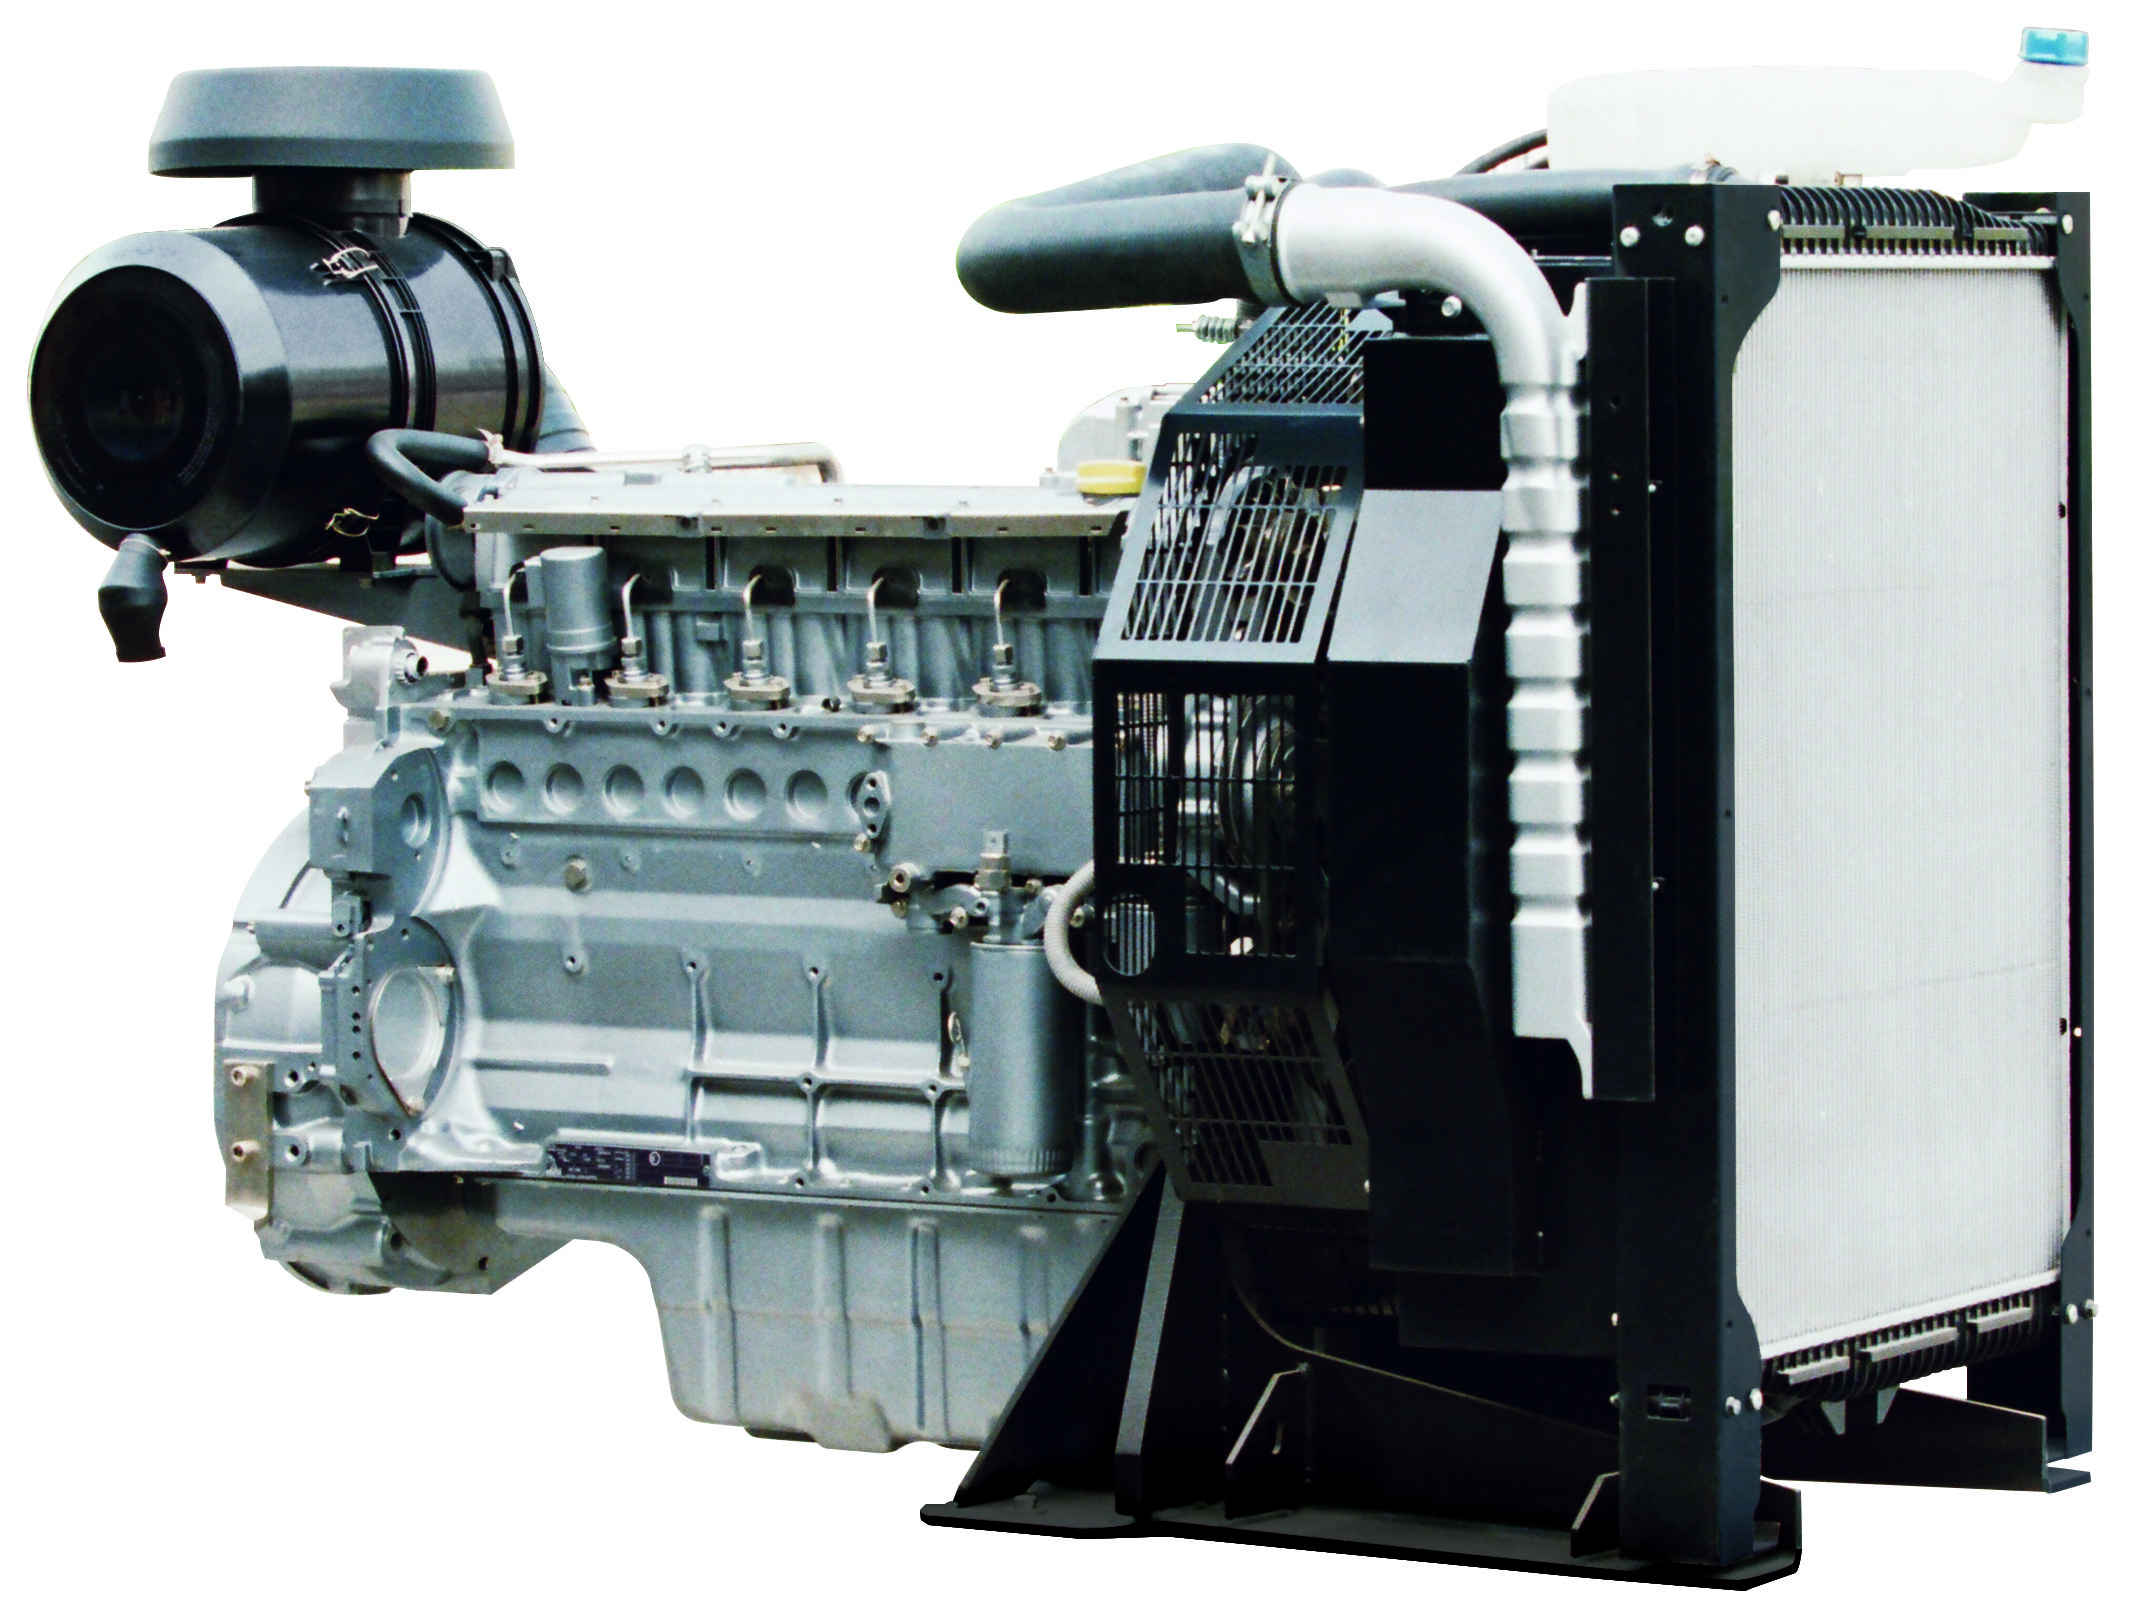 موتور دیزل Deutz Diesel BF6M1013EC برای مجموعه ژنراتور Deutz 200kVA